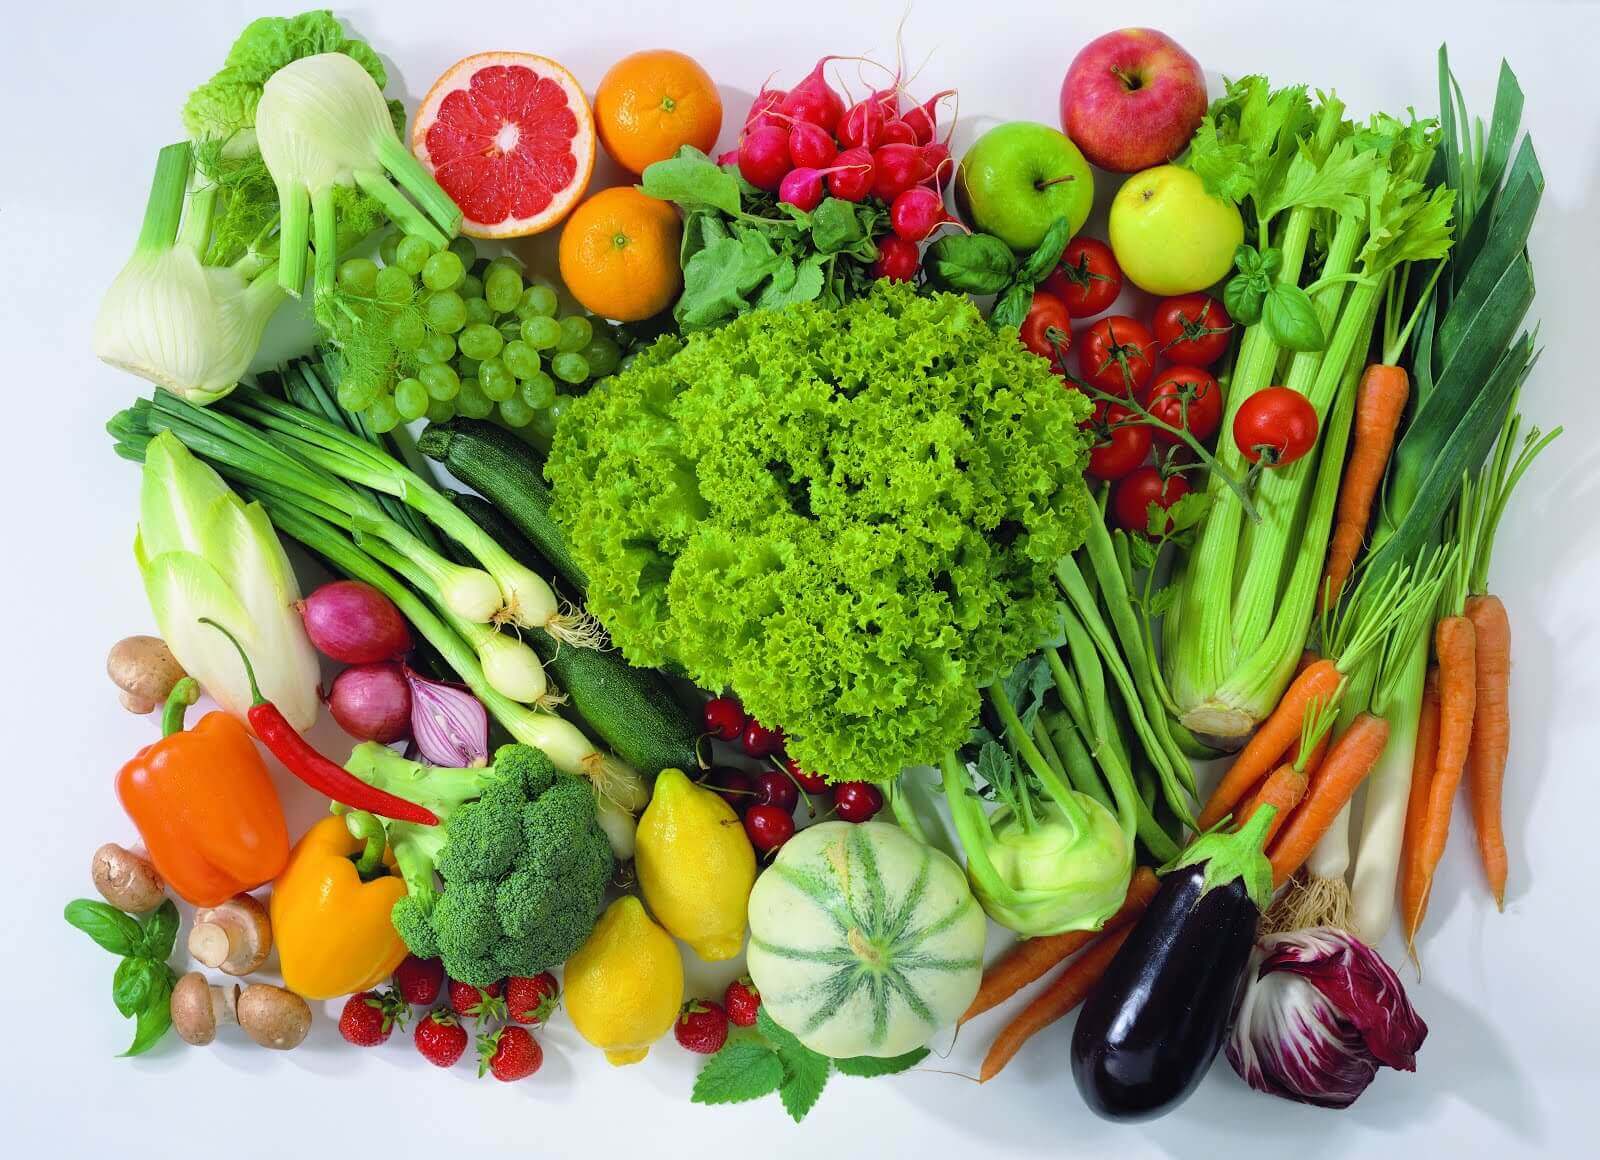 Afvallen tijdens de overgang is mogelijk door meer groenten te eten